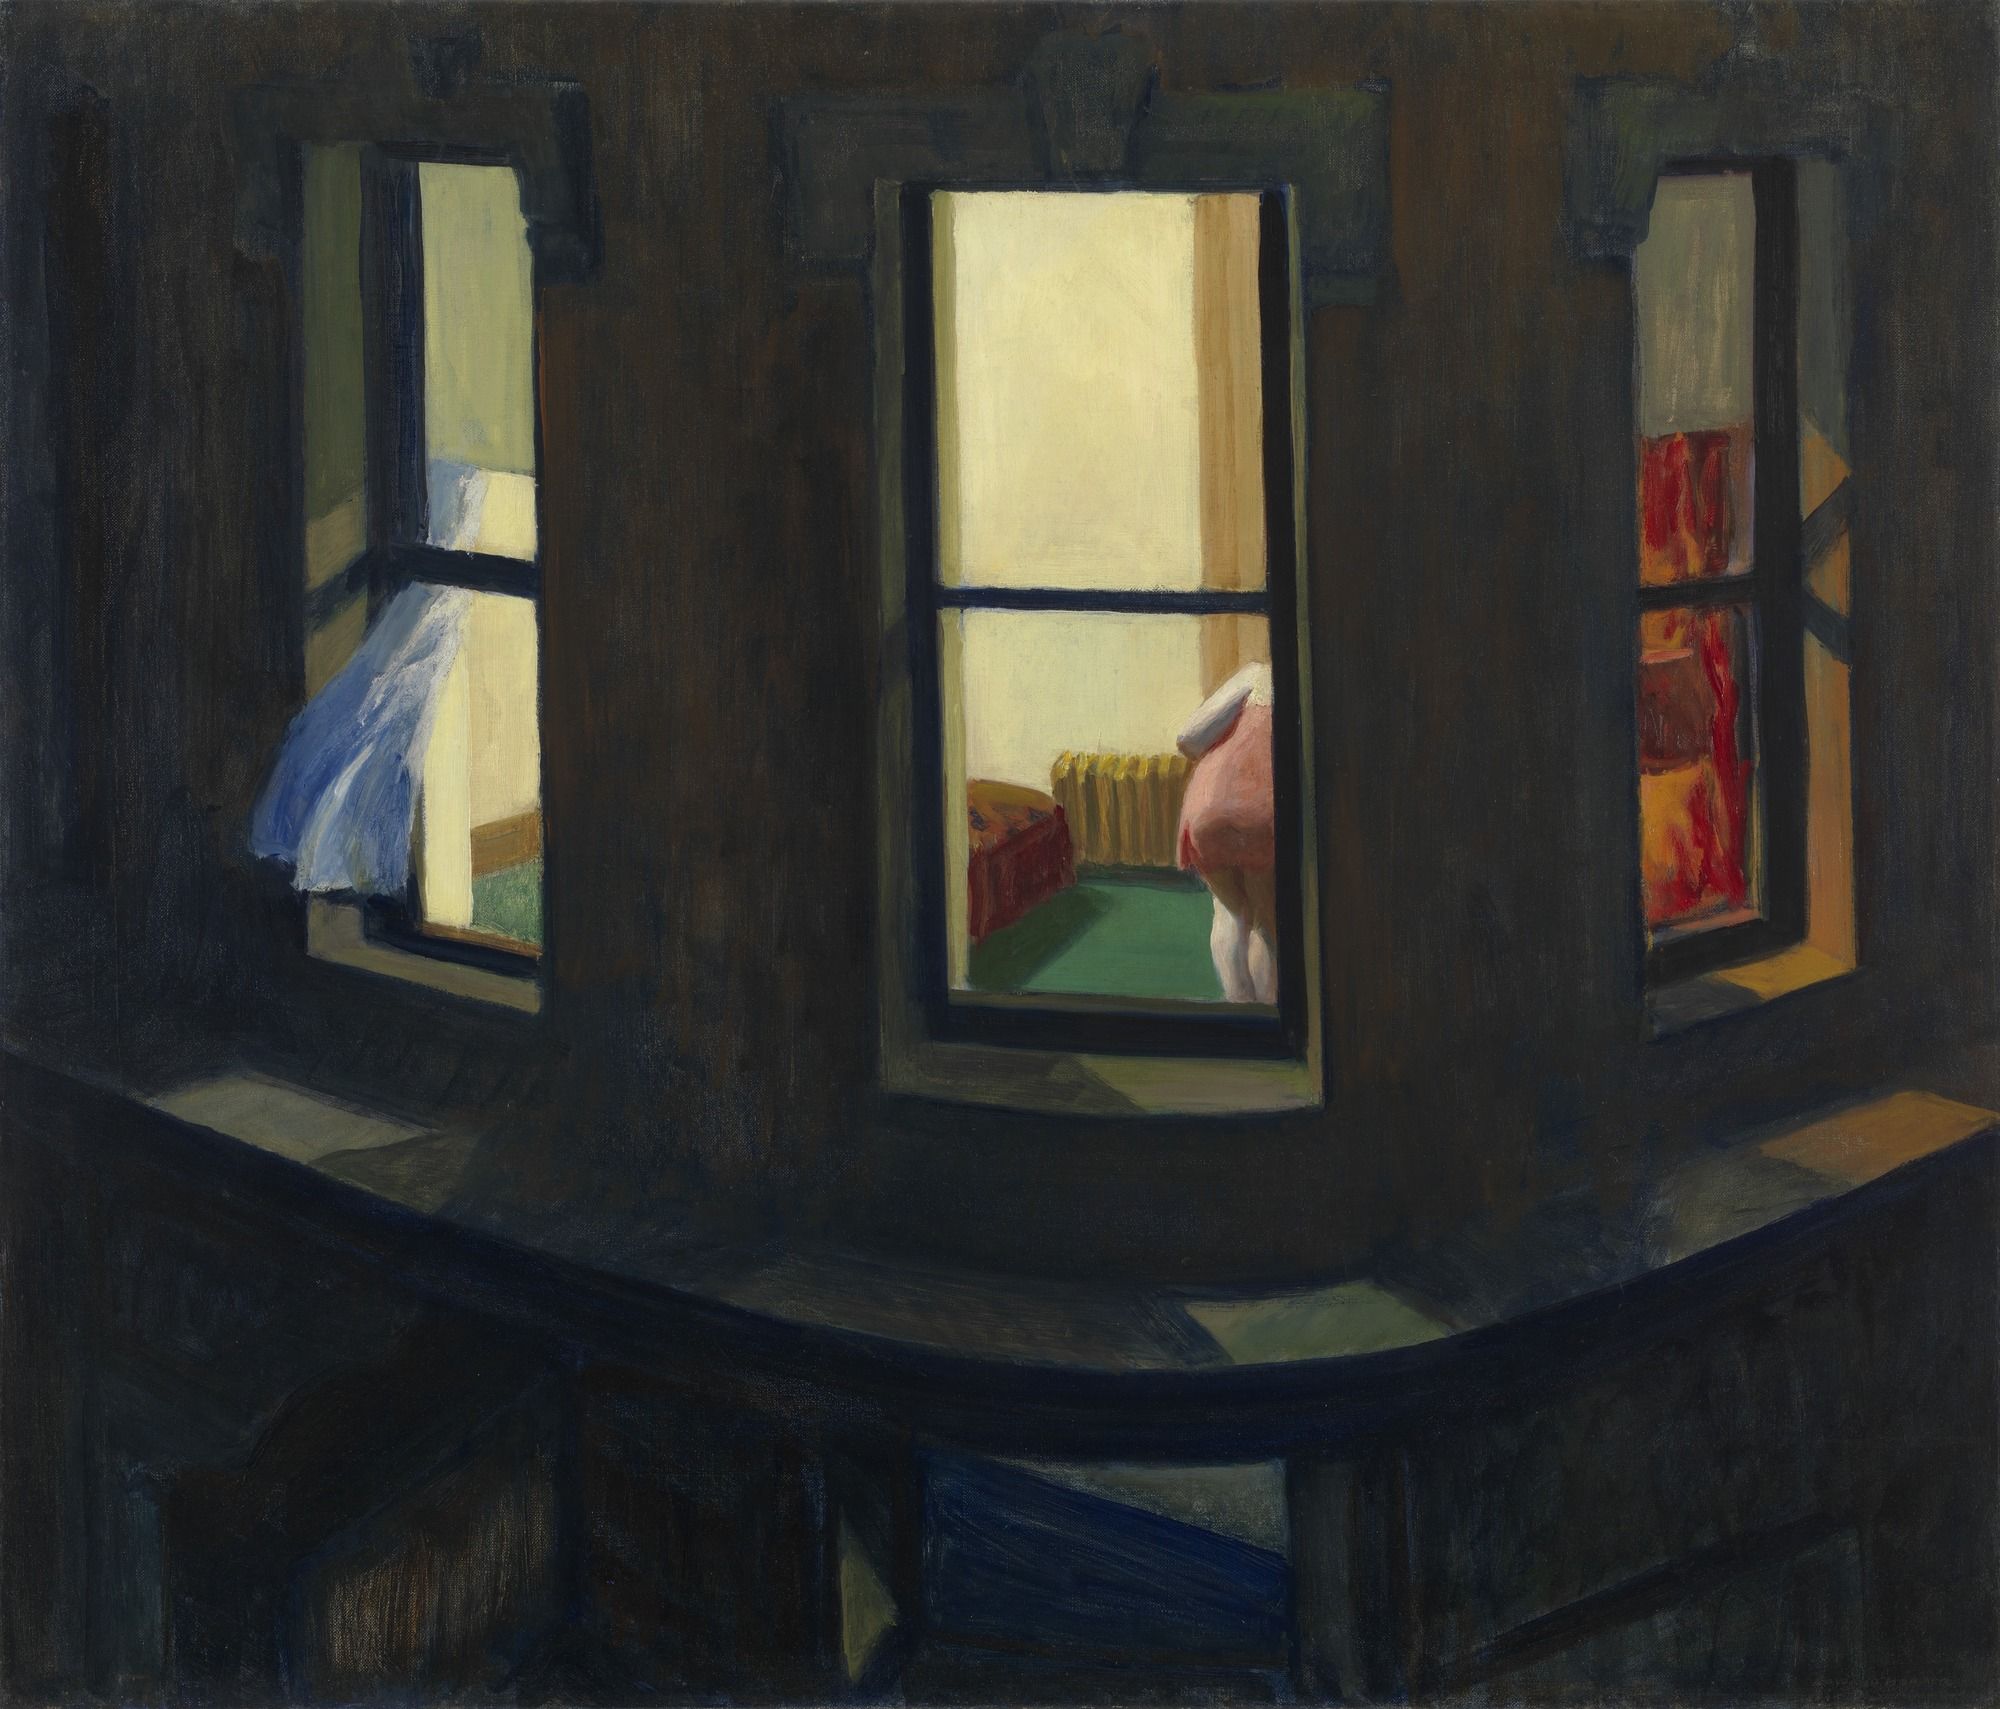 Éjszakai ablak by Edward Hopper - 1928 - 74 x 86 cm 